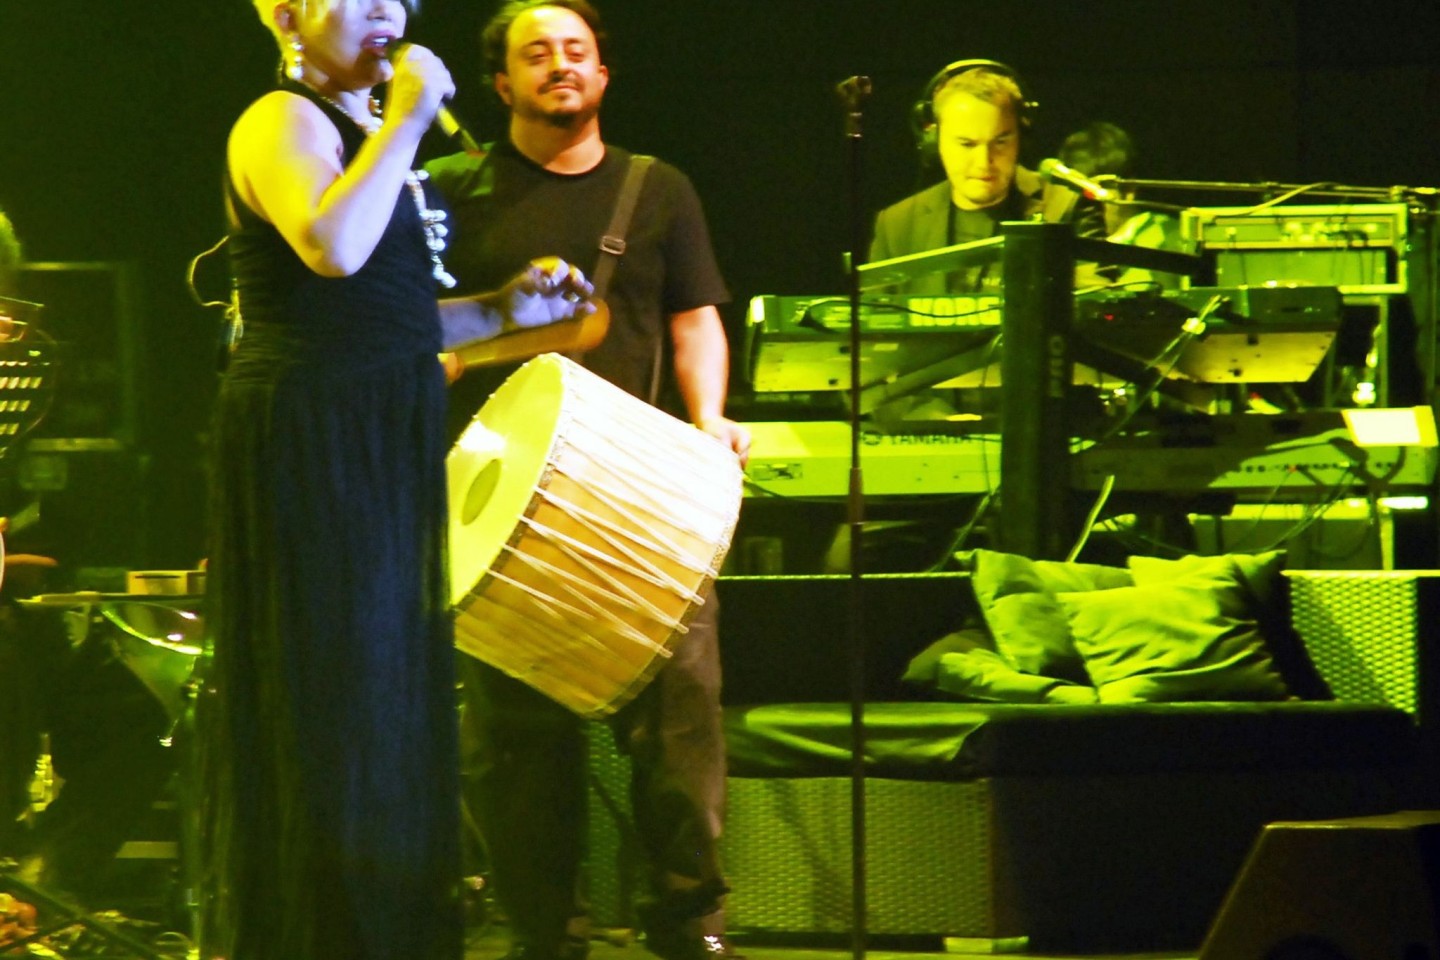 Die türkische Sängerin Sezen Aksu bei einem Konzert in Berlin 2009.